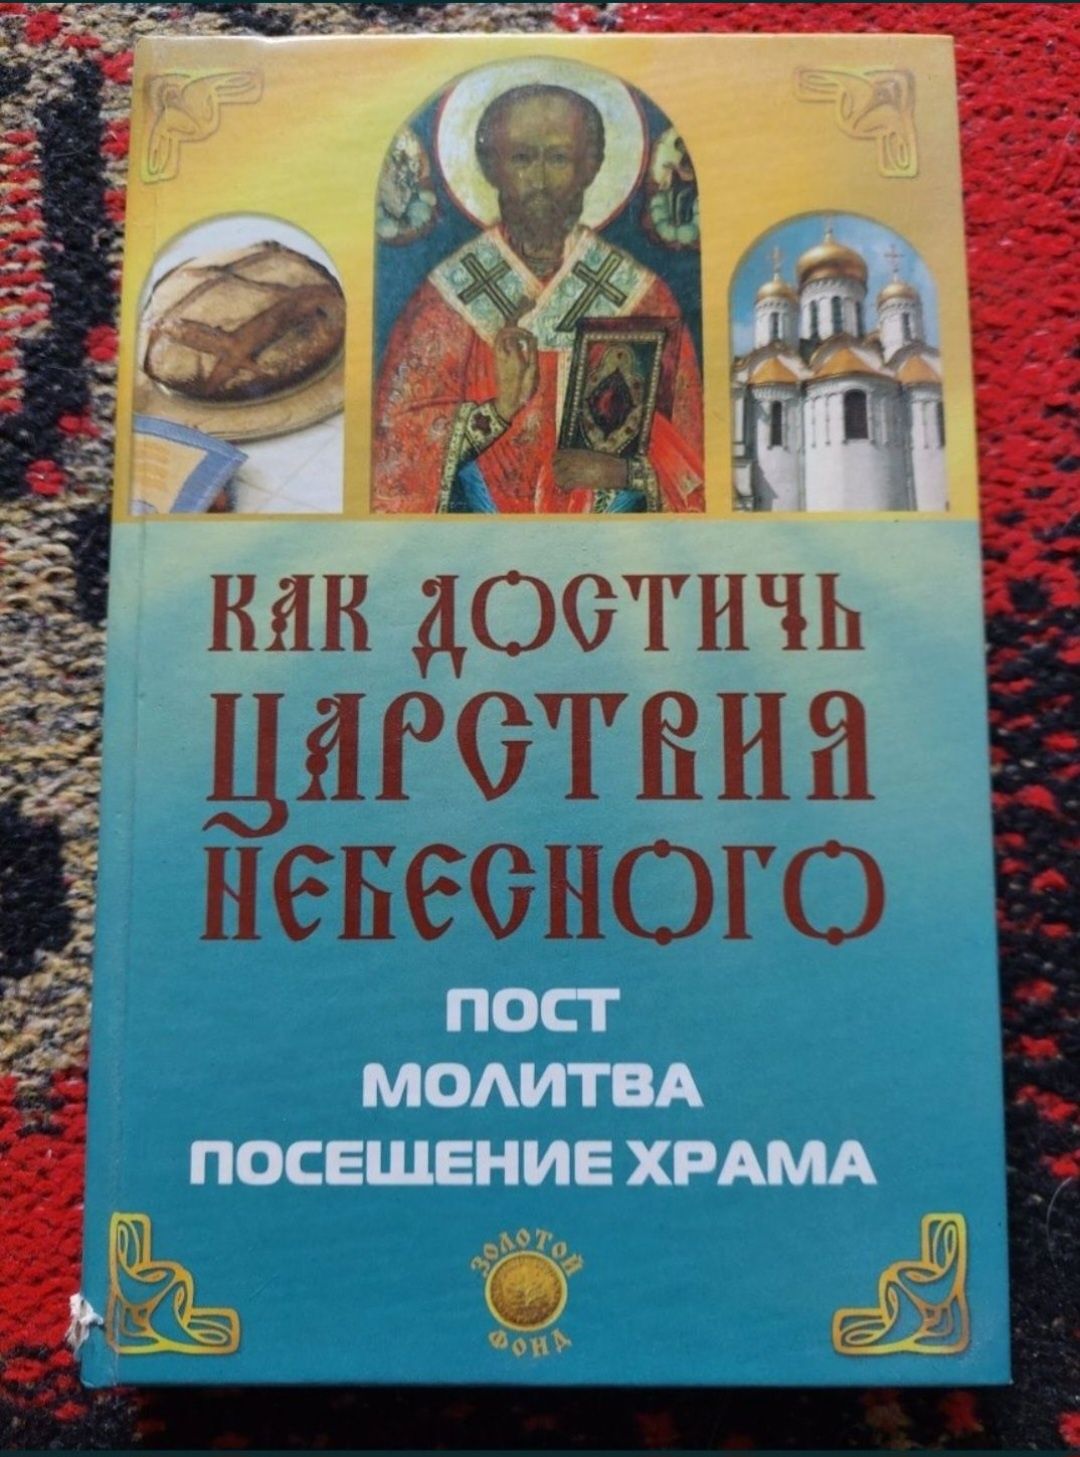 Православні книги на різну тематику